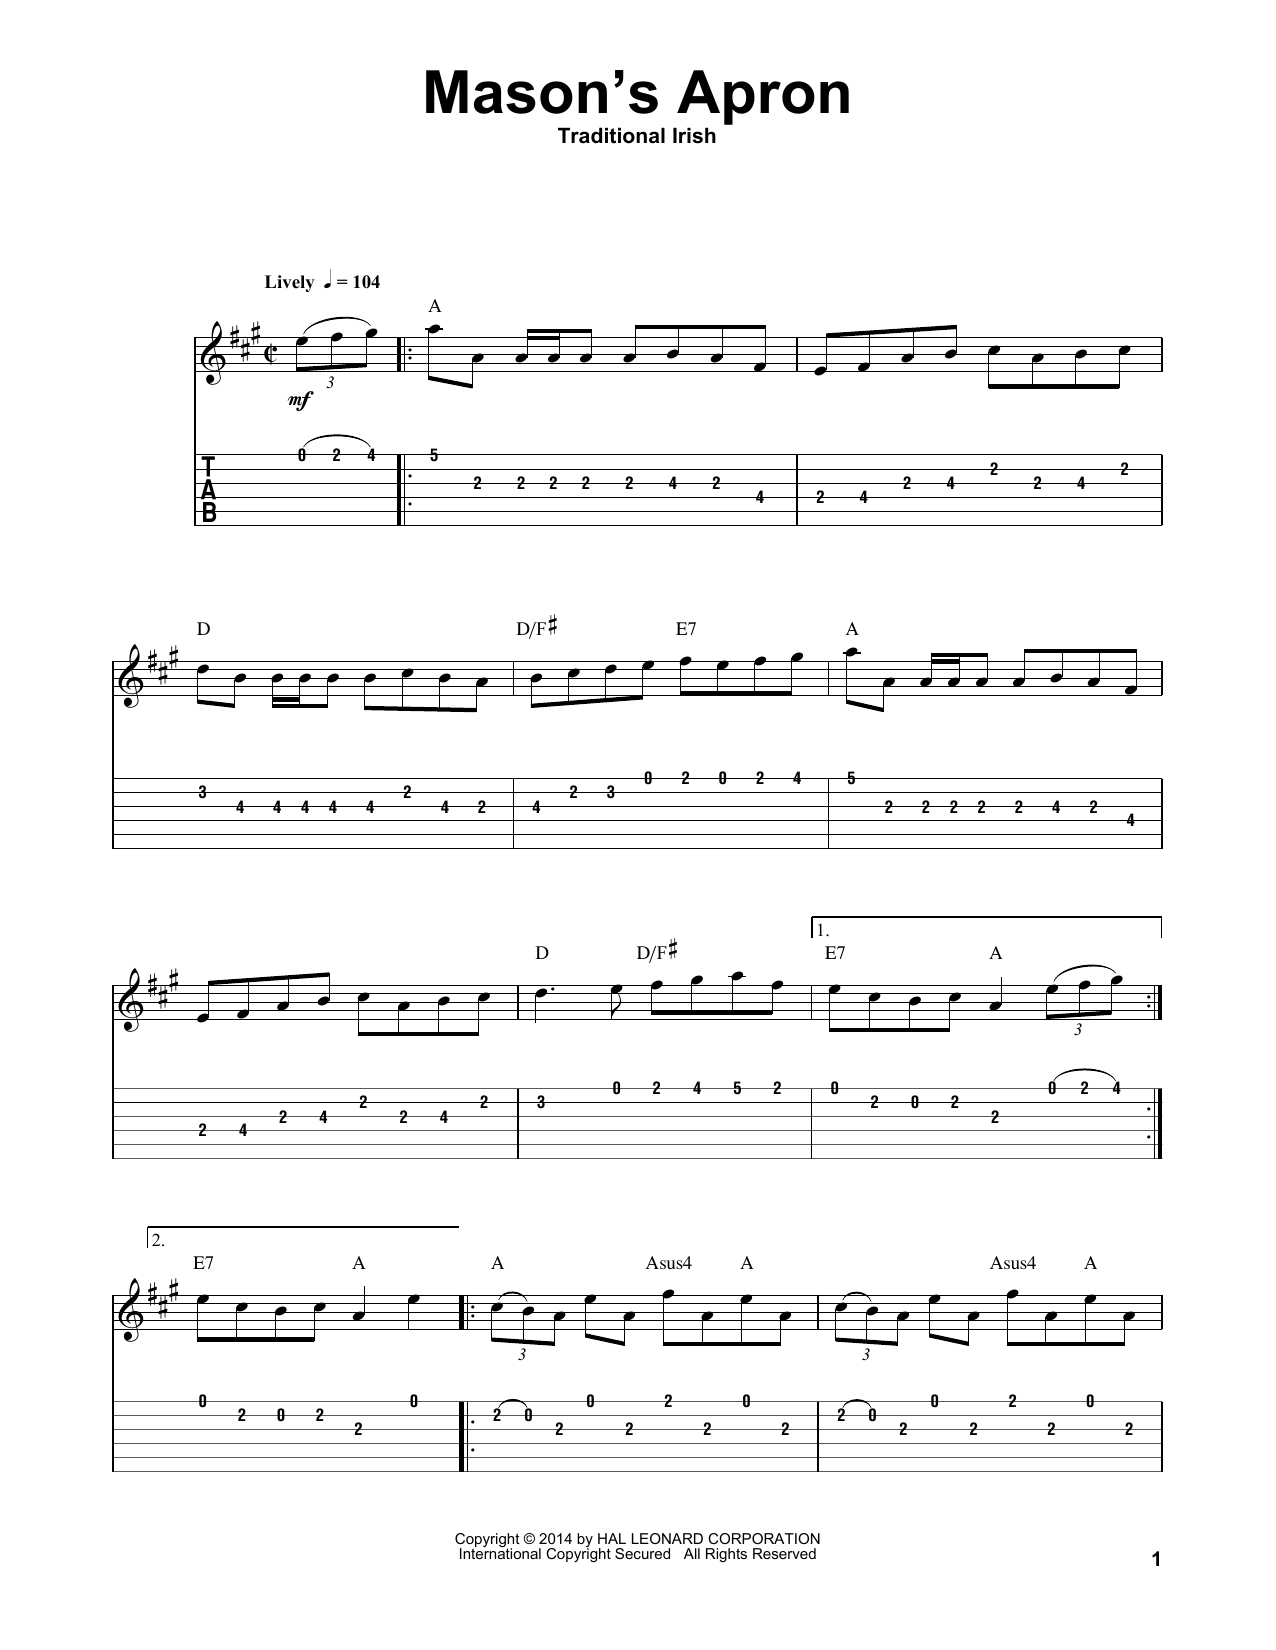 Irish Folksong Mason's Apron Sheet Music Notes & Chords for Guitar Tab Play-Along - Download or Print PDF